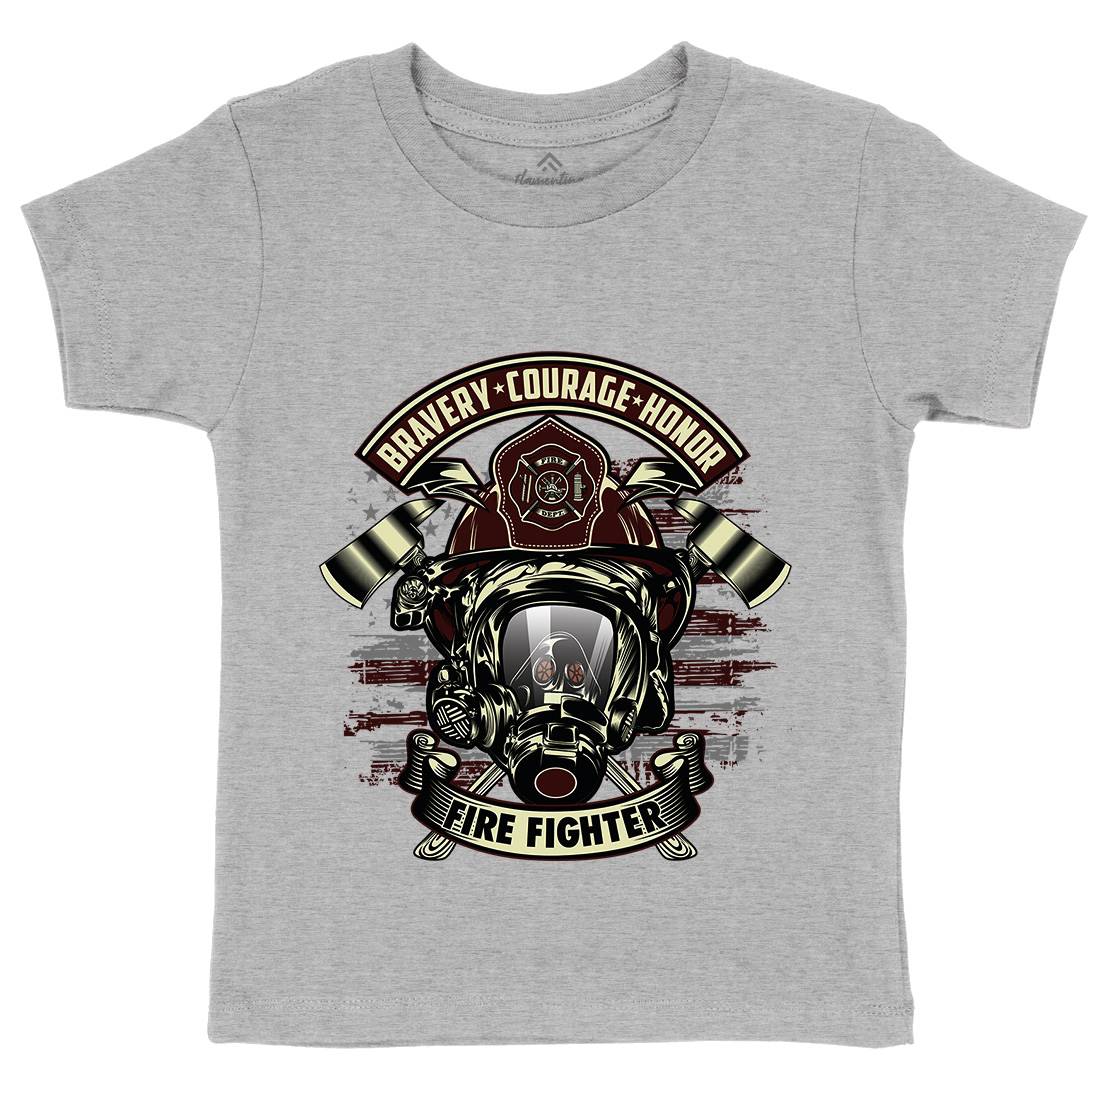 Fire Fighter Kids Crew Neck T-Shirt Firefighters D030